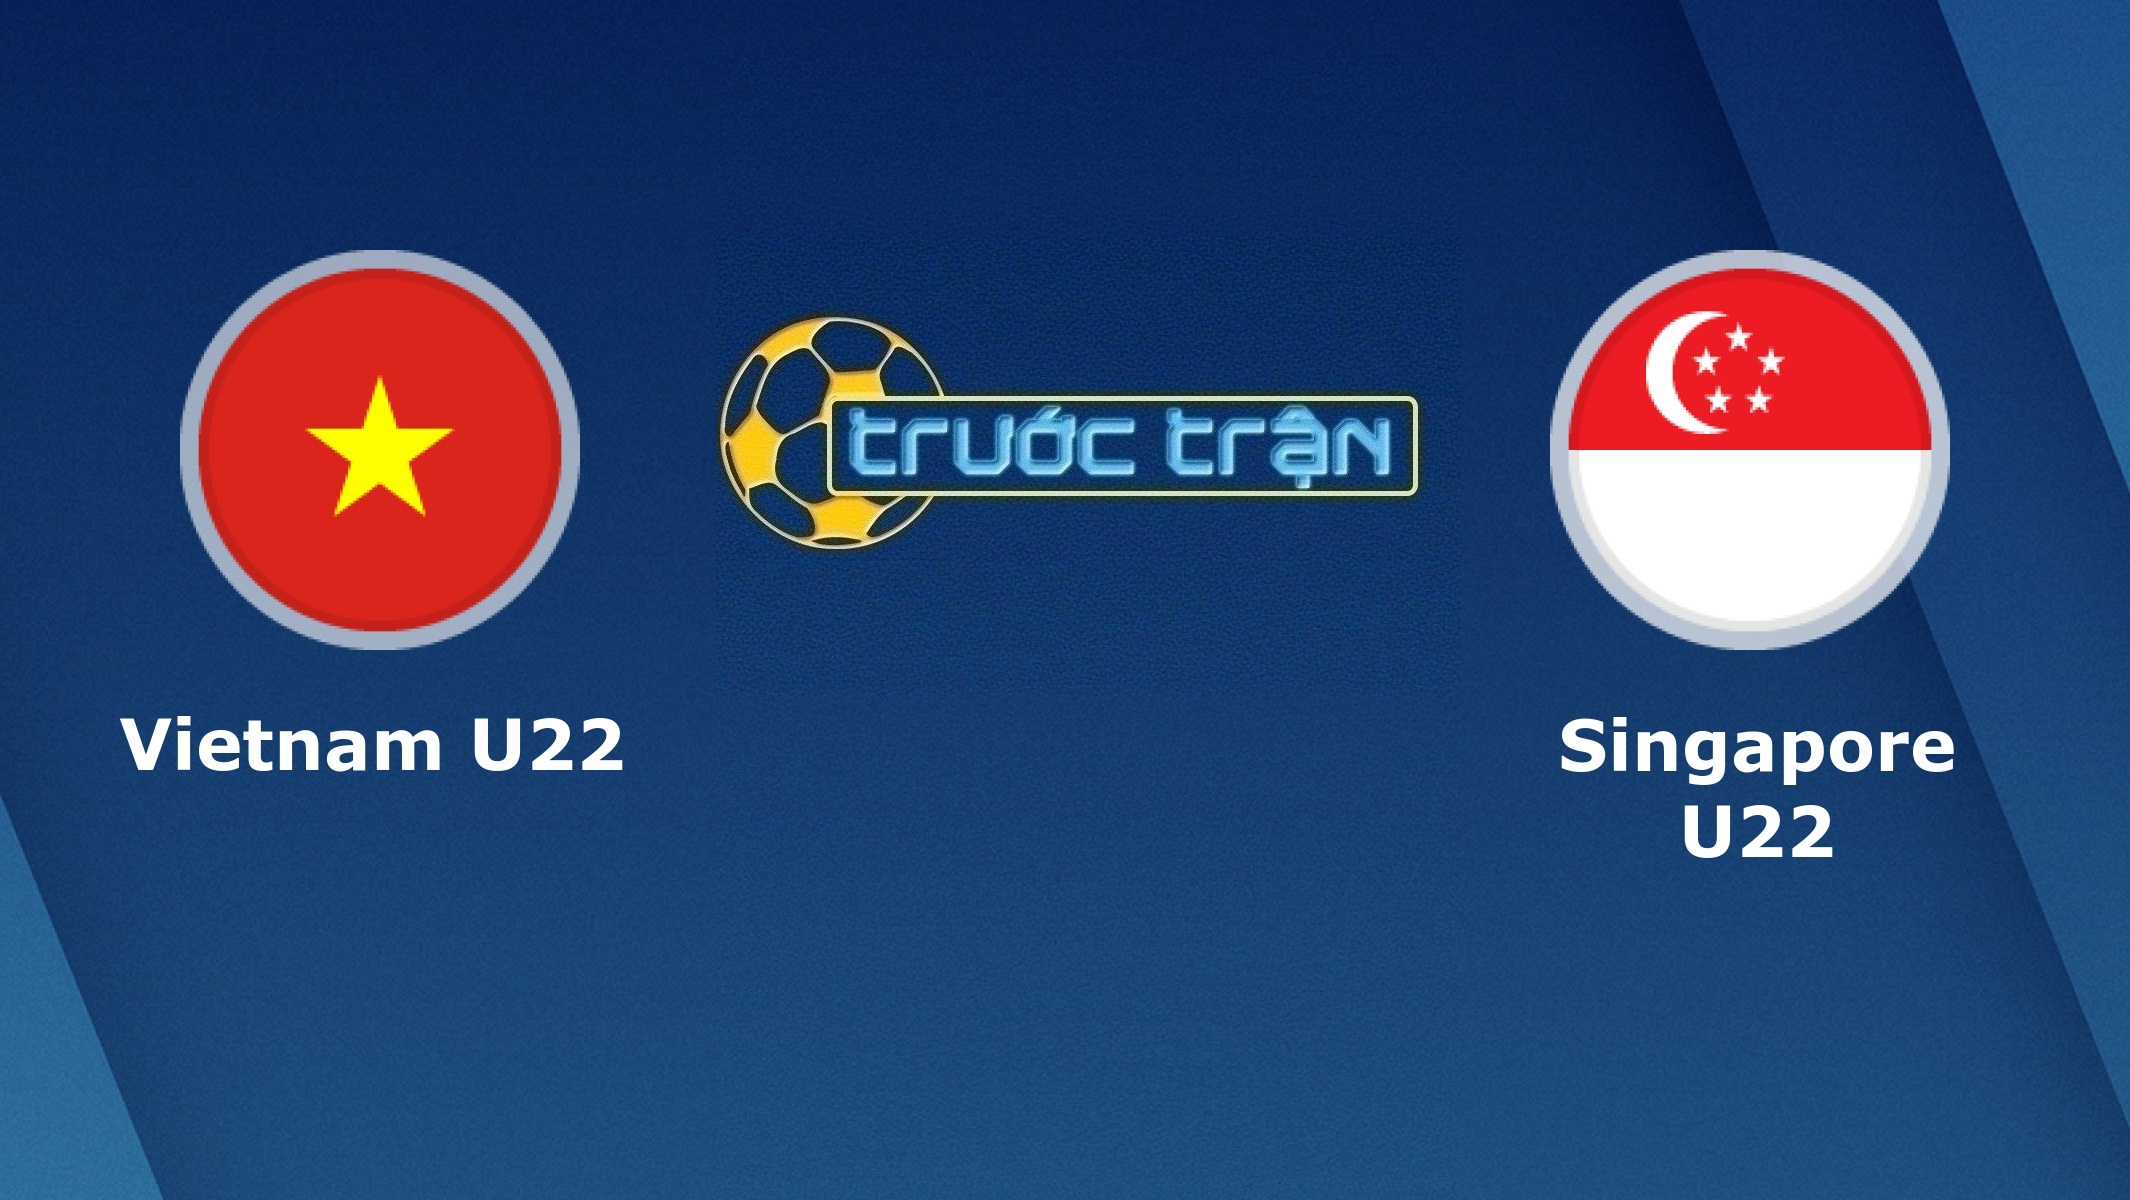 U22 Việt Nam vs U22 Singapore – Tip kèo bóng đá hôm nay – 03/12